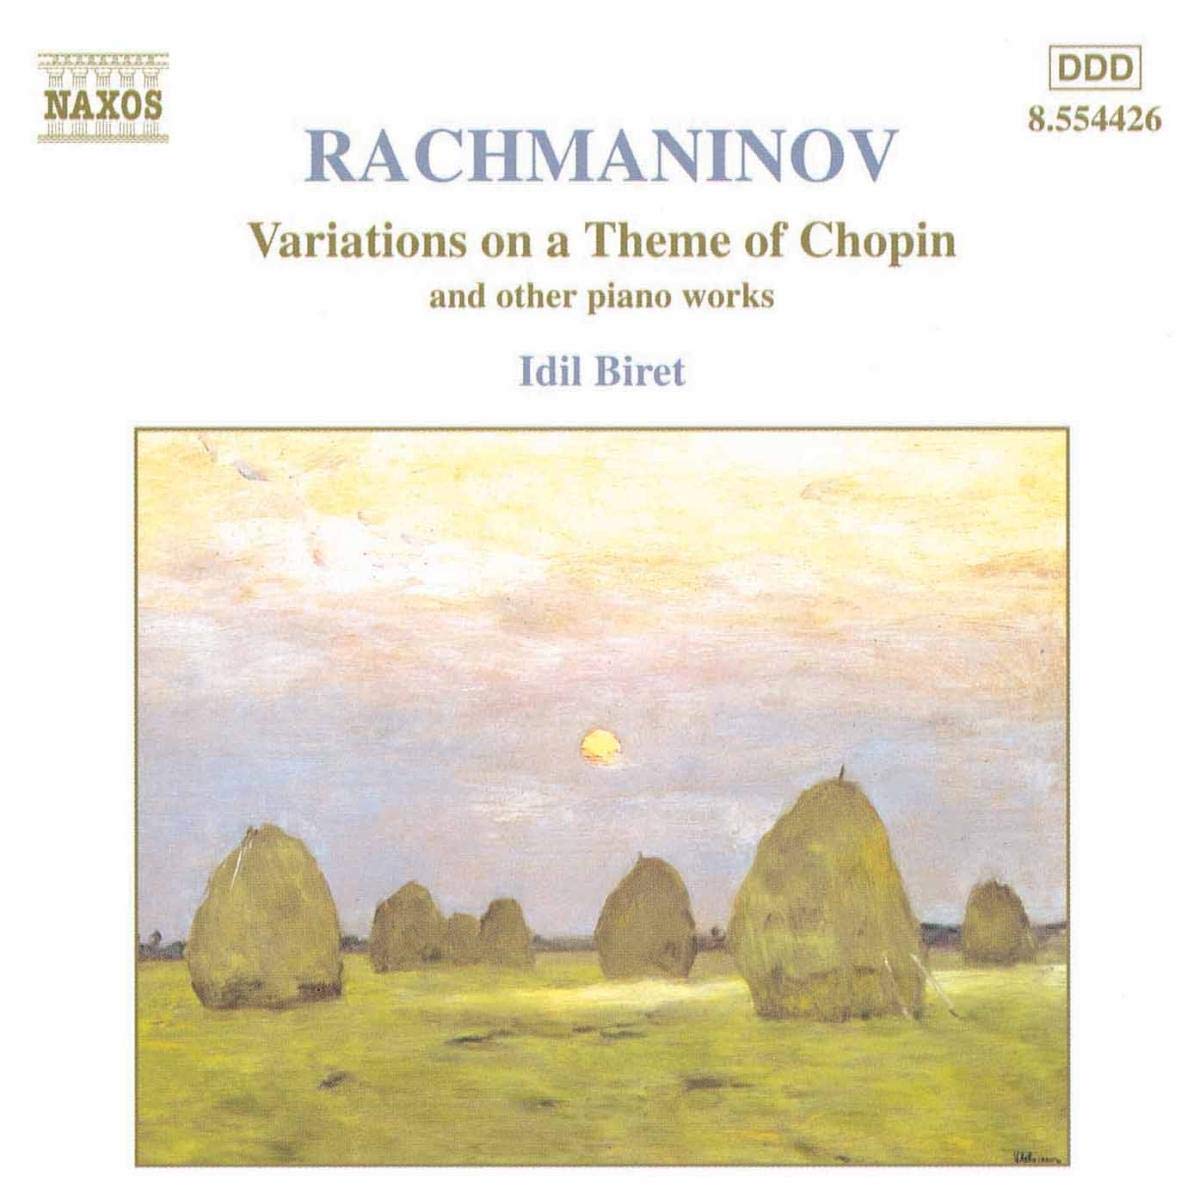 RACHMANINOV: Variations on a Theme